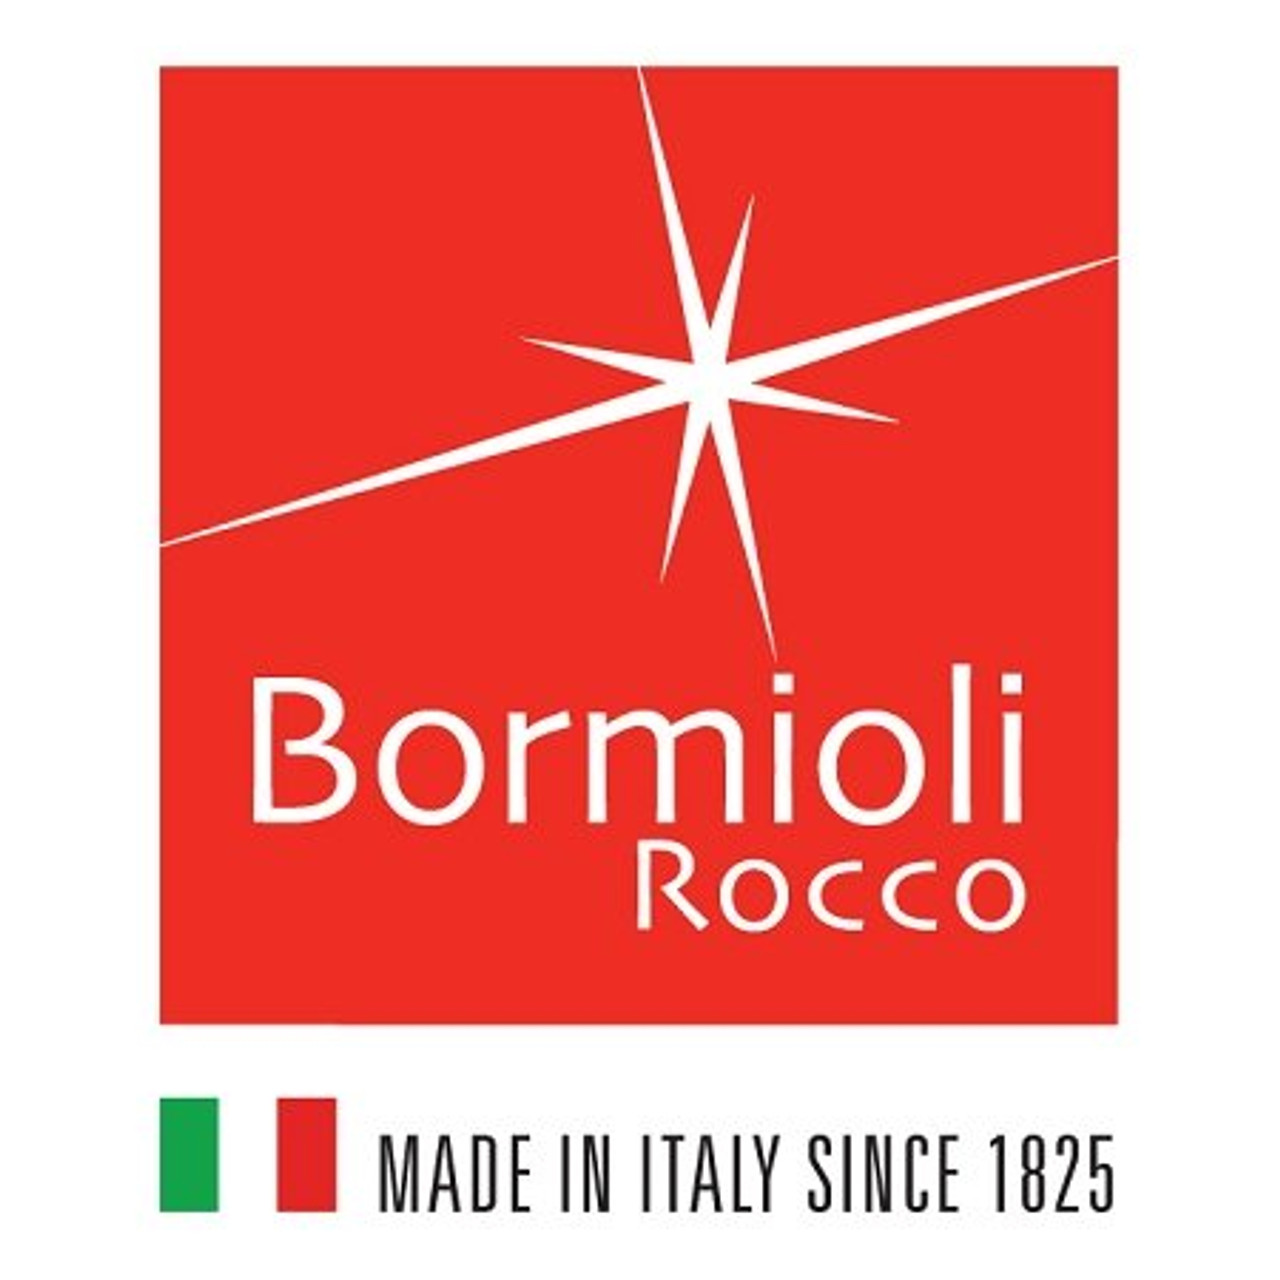 Bormioli Rocco - Made in Italy